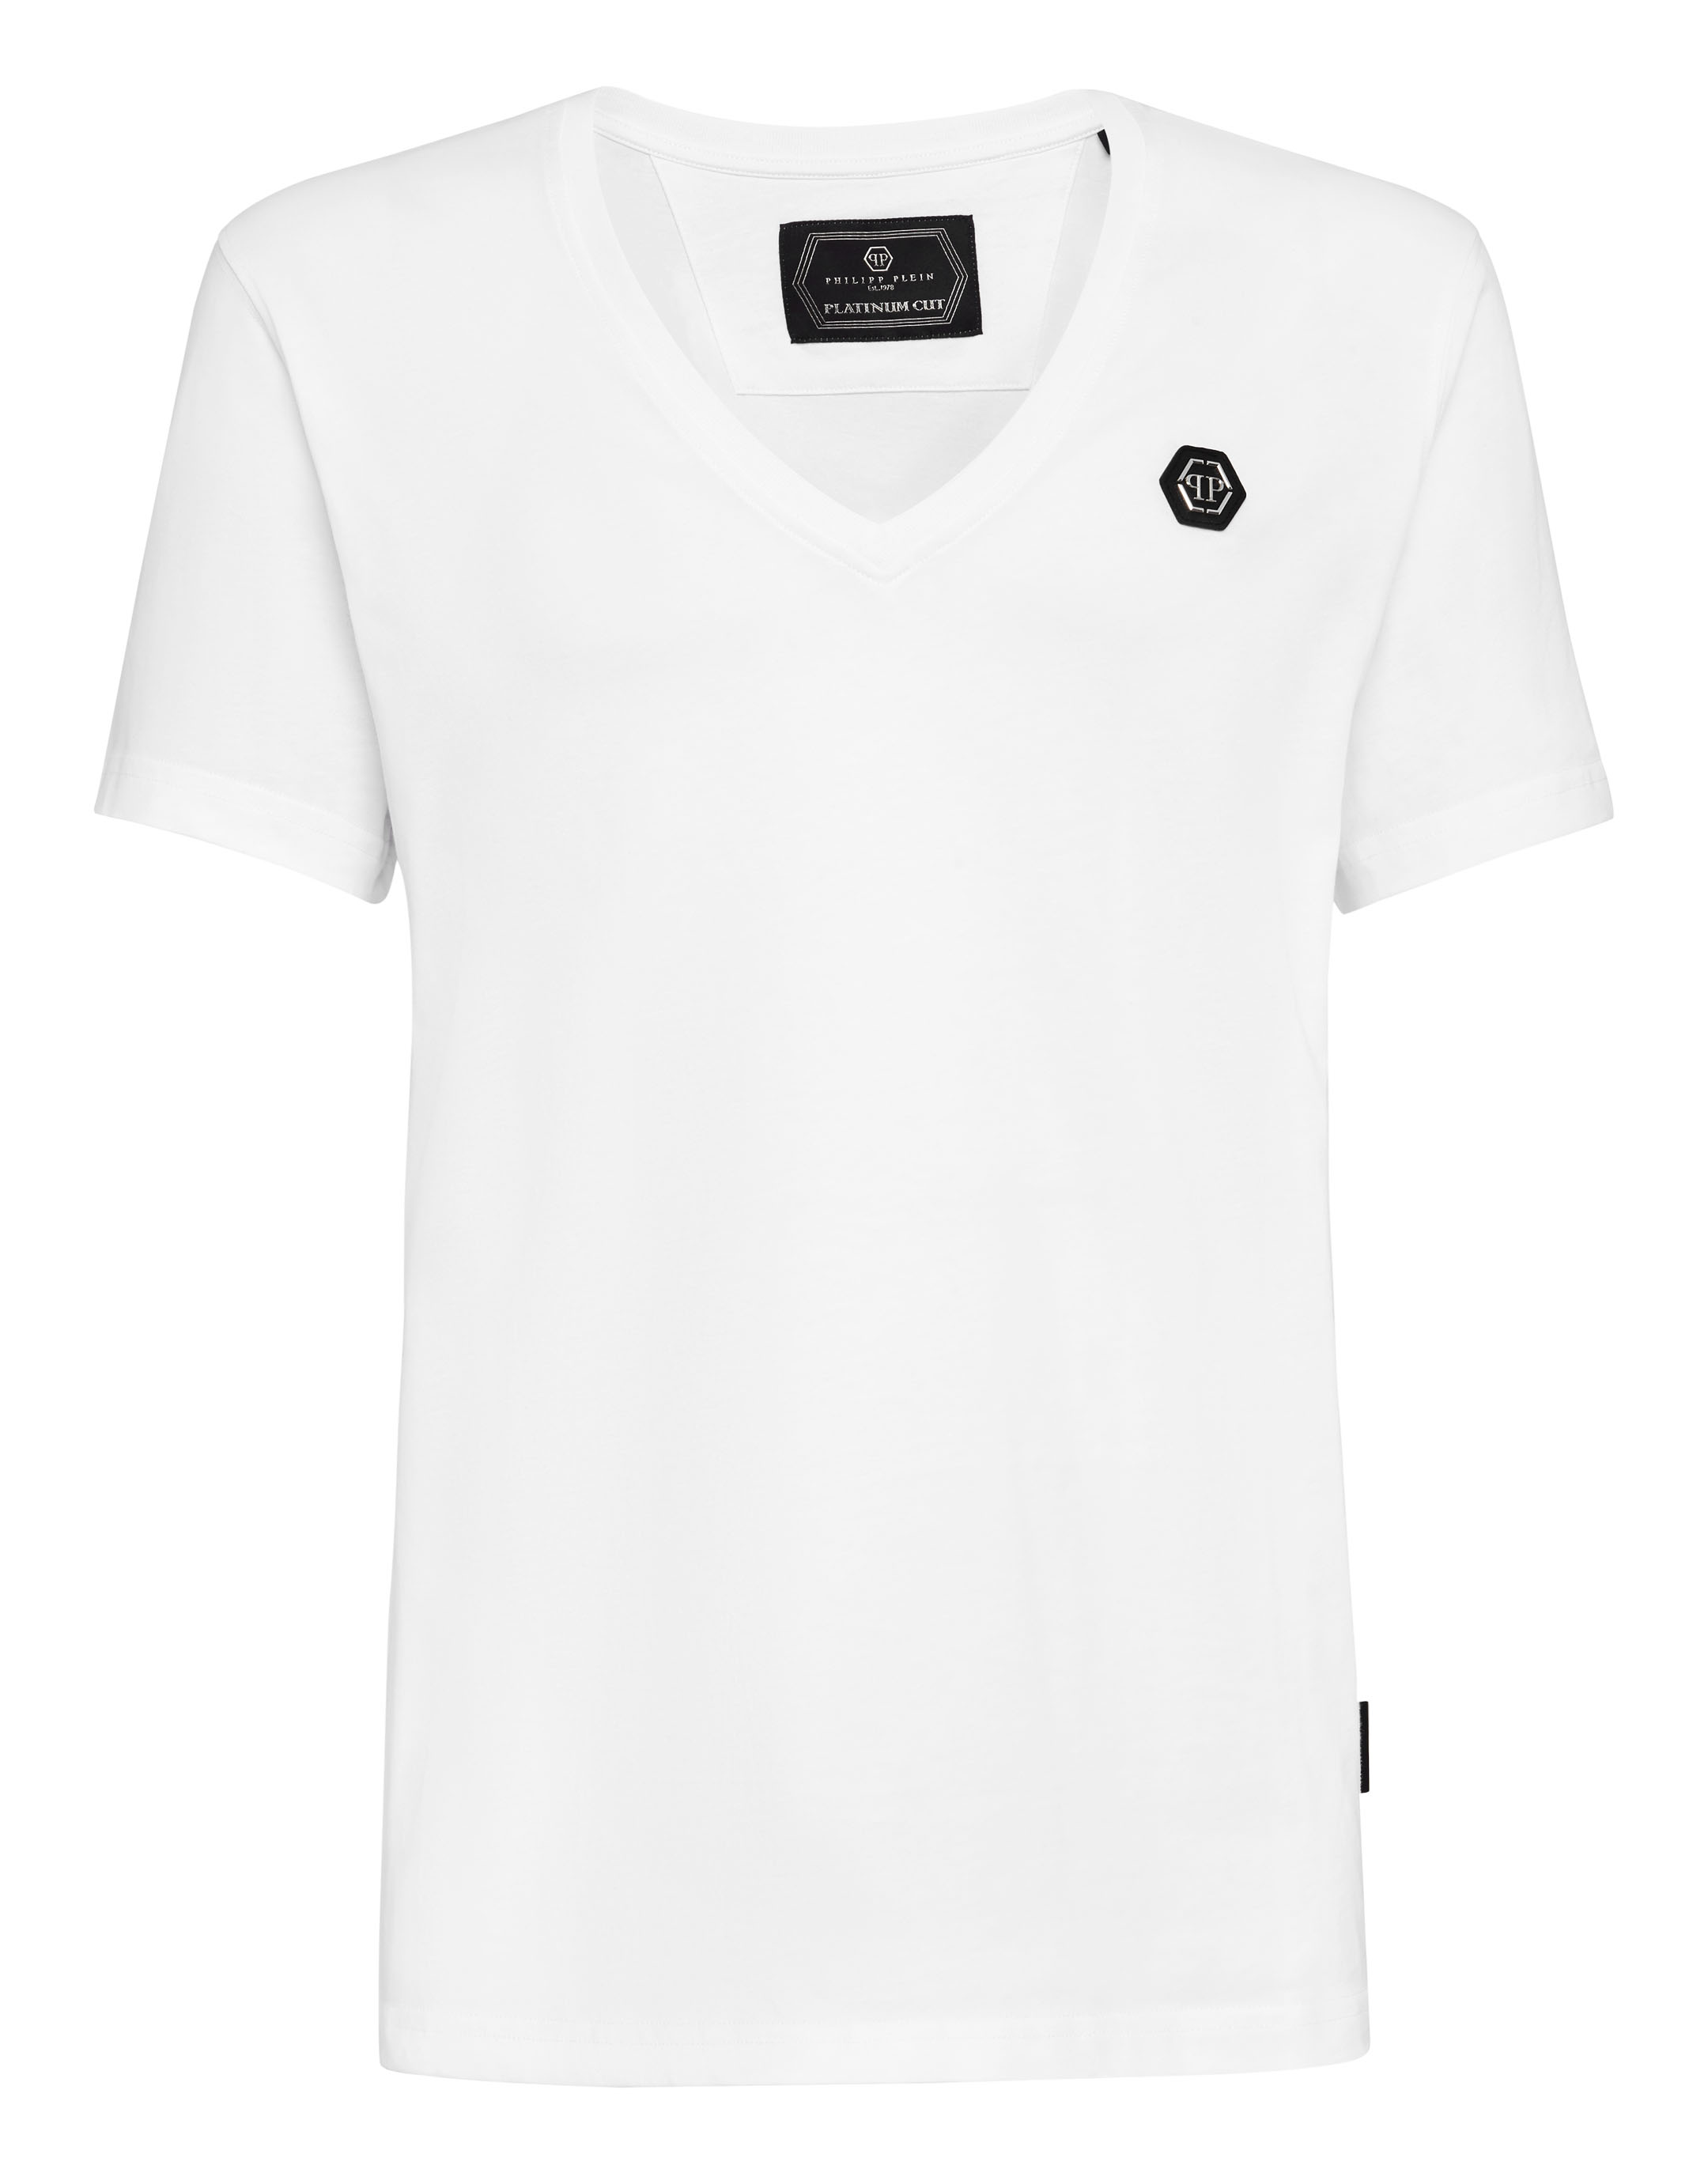 T-shirt Platinum Cut V-Neck Original | Philipp Plein Outlet